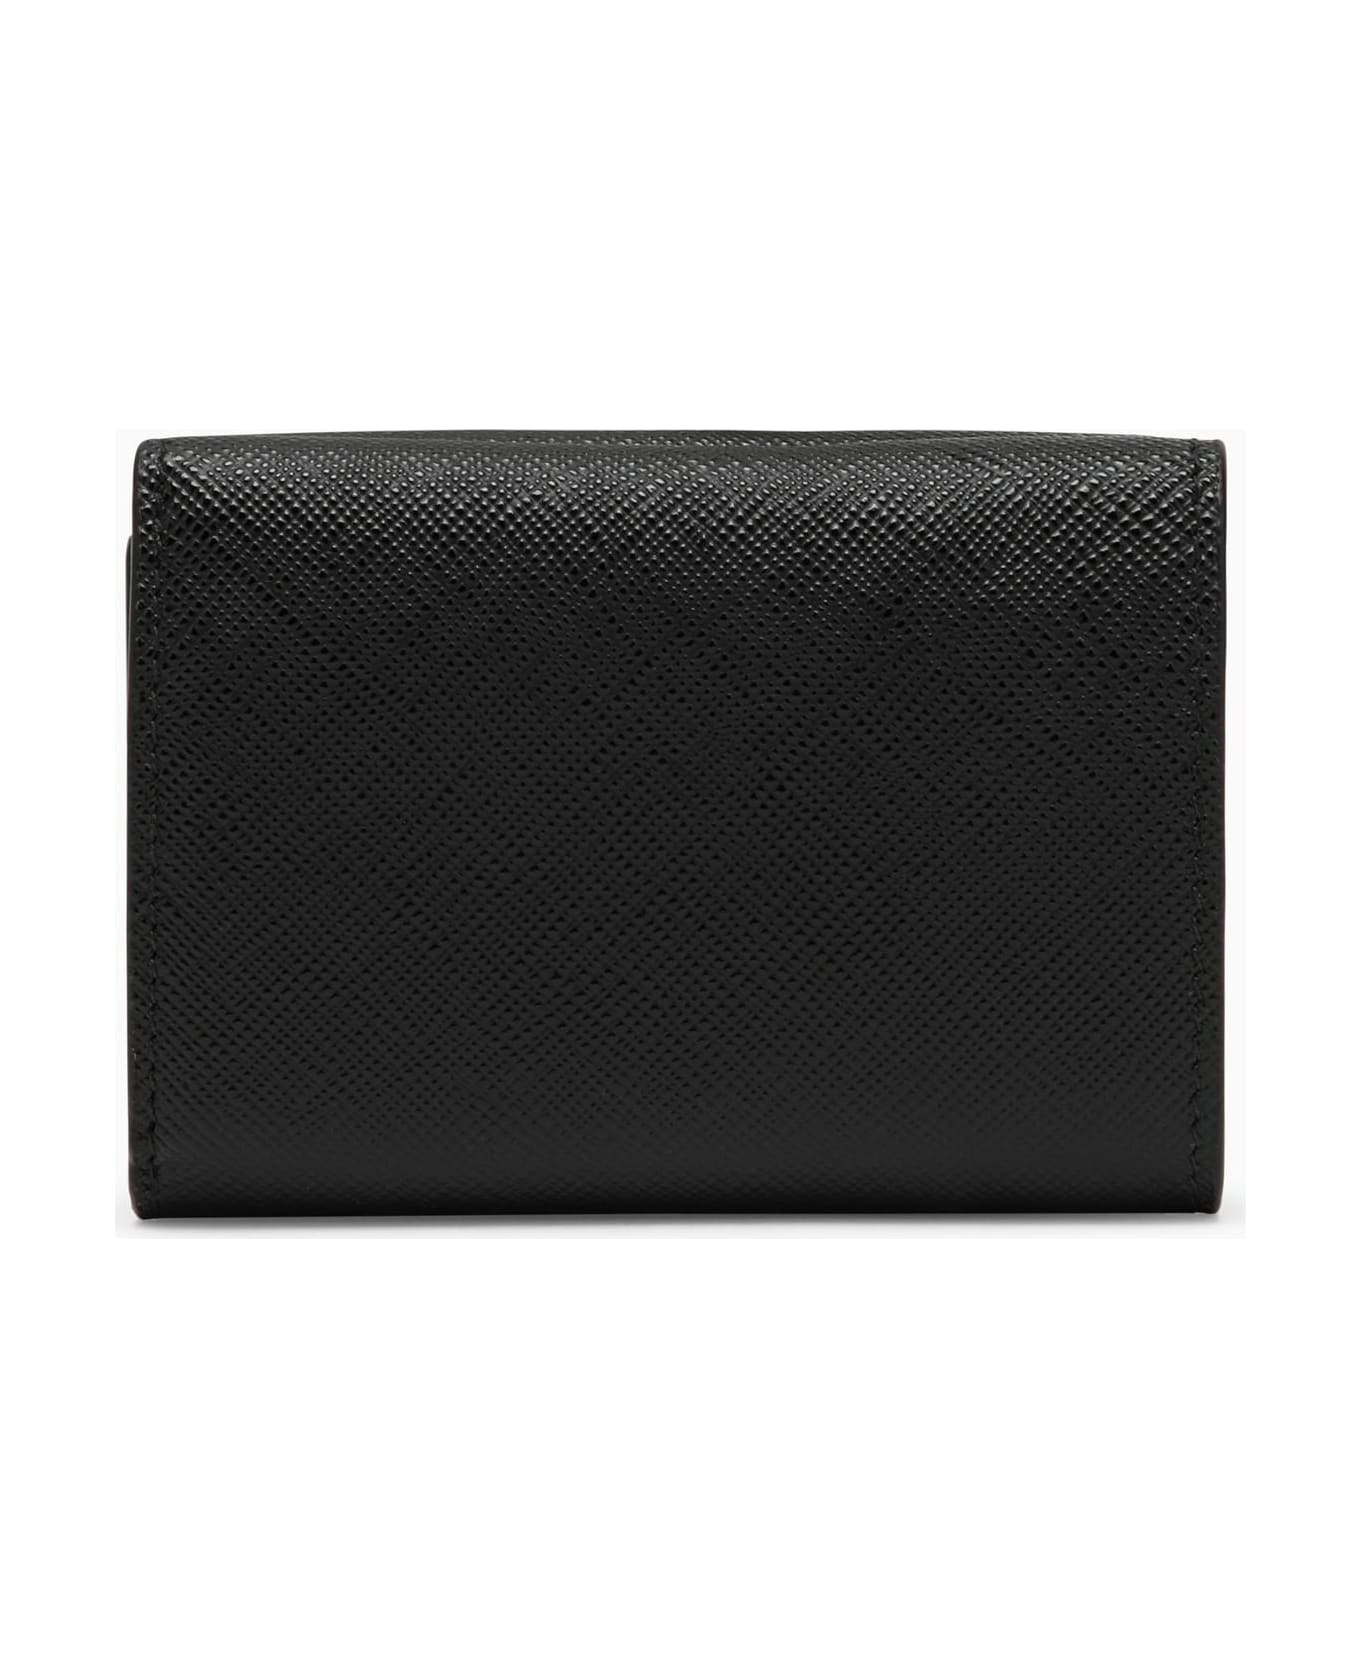 Prada Black Saffiano Leather Small Wallet - Nero 財布